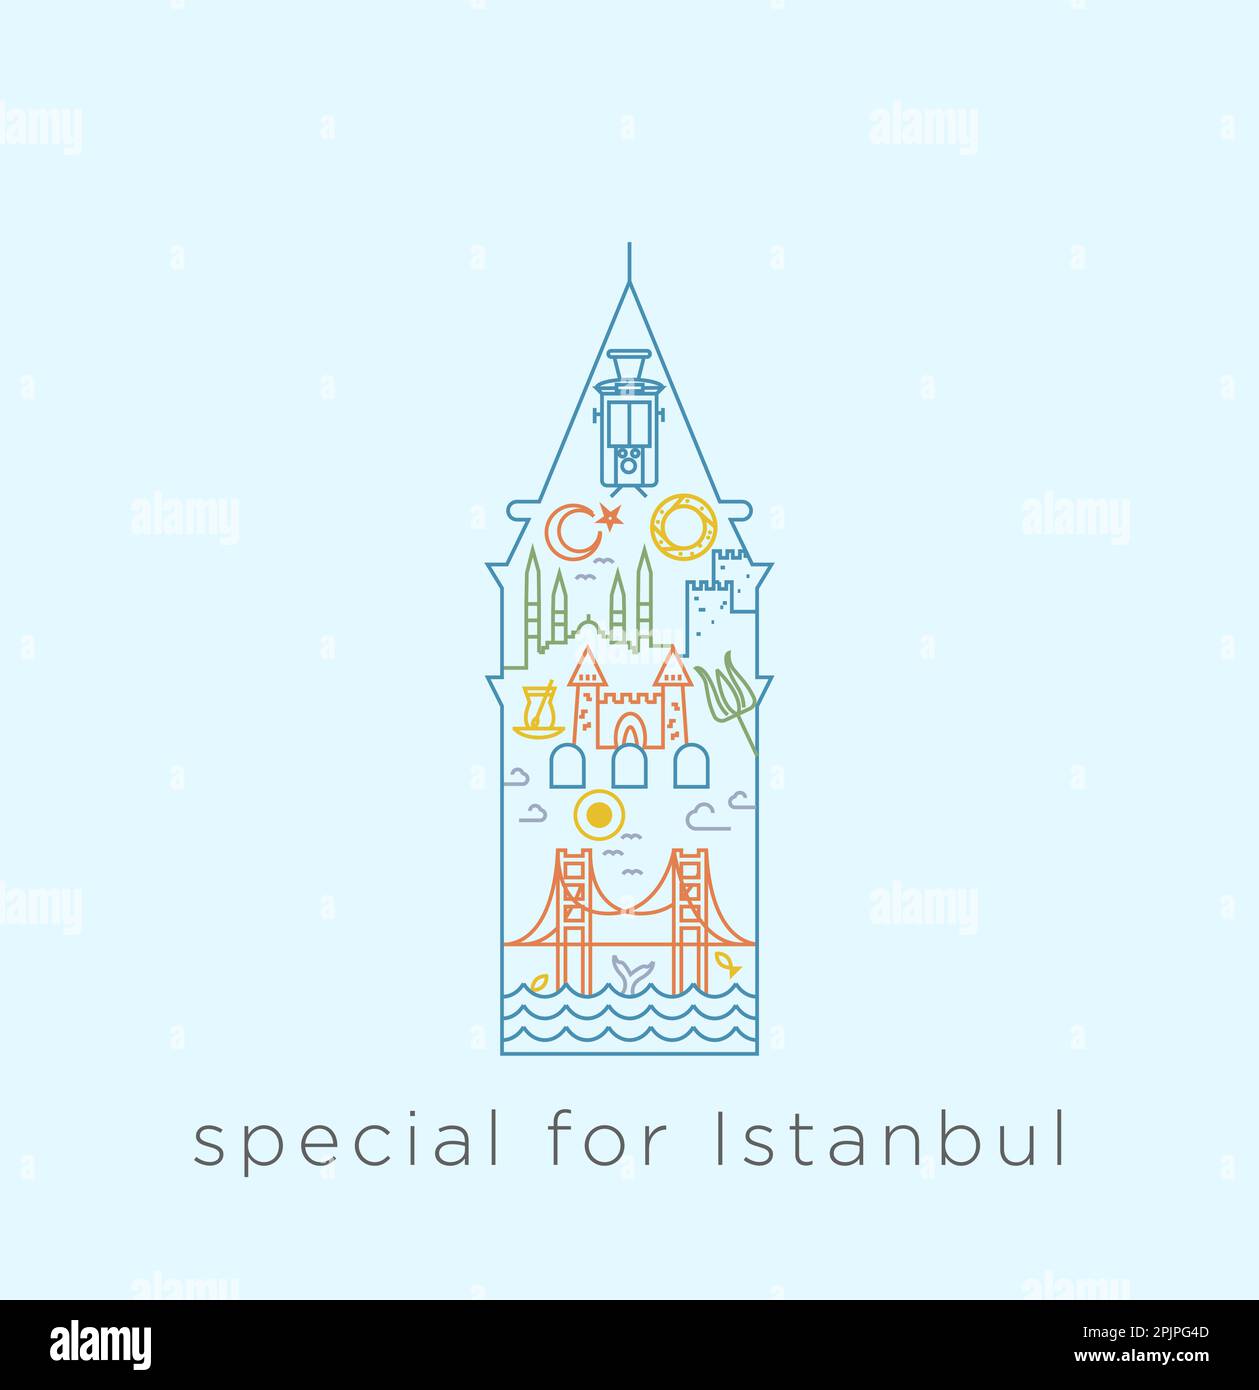 Spezielle Icon-Serie für Istanbul. Collage über historische Orte, Moscheen, Brücke, Bagel, Tee, Innerhalb der Linie des Galata-Turms. Stock Vektor